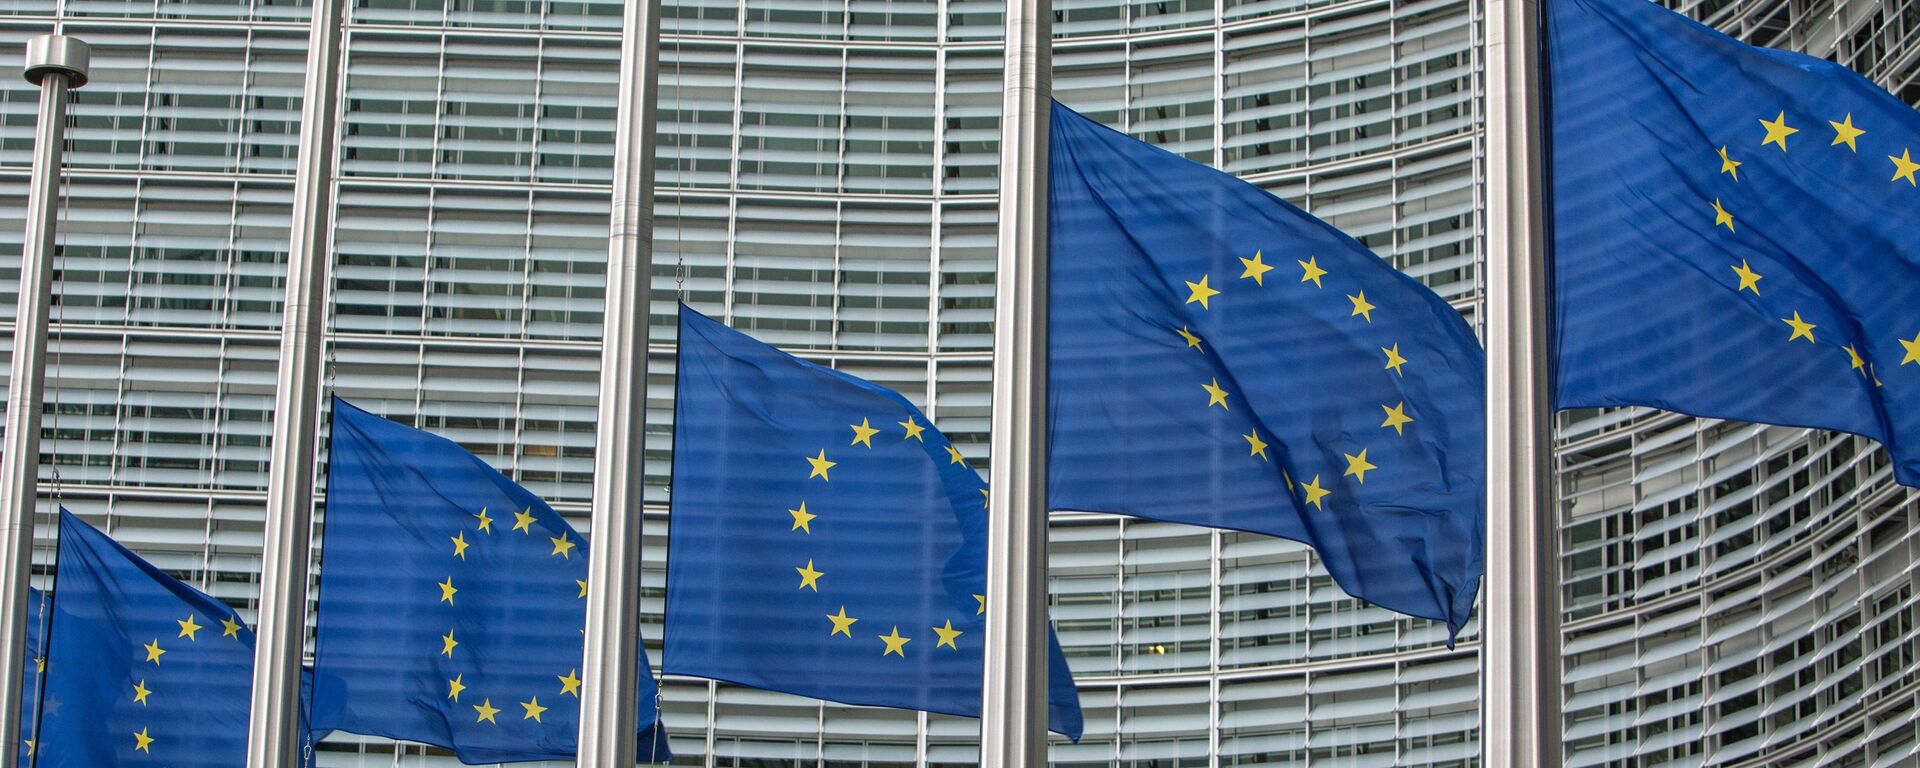 Флаги возле штаб-квартиры Европейской комиссии в Брюсселе - Sputnik Қазақстан, 1920, 14.12.2020